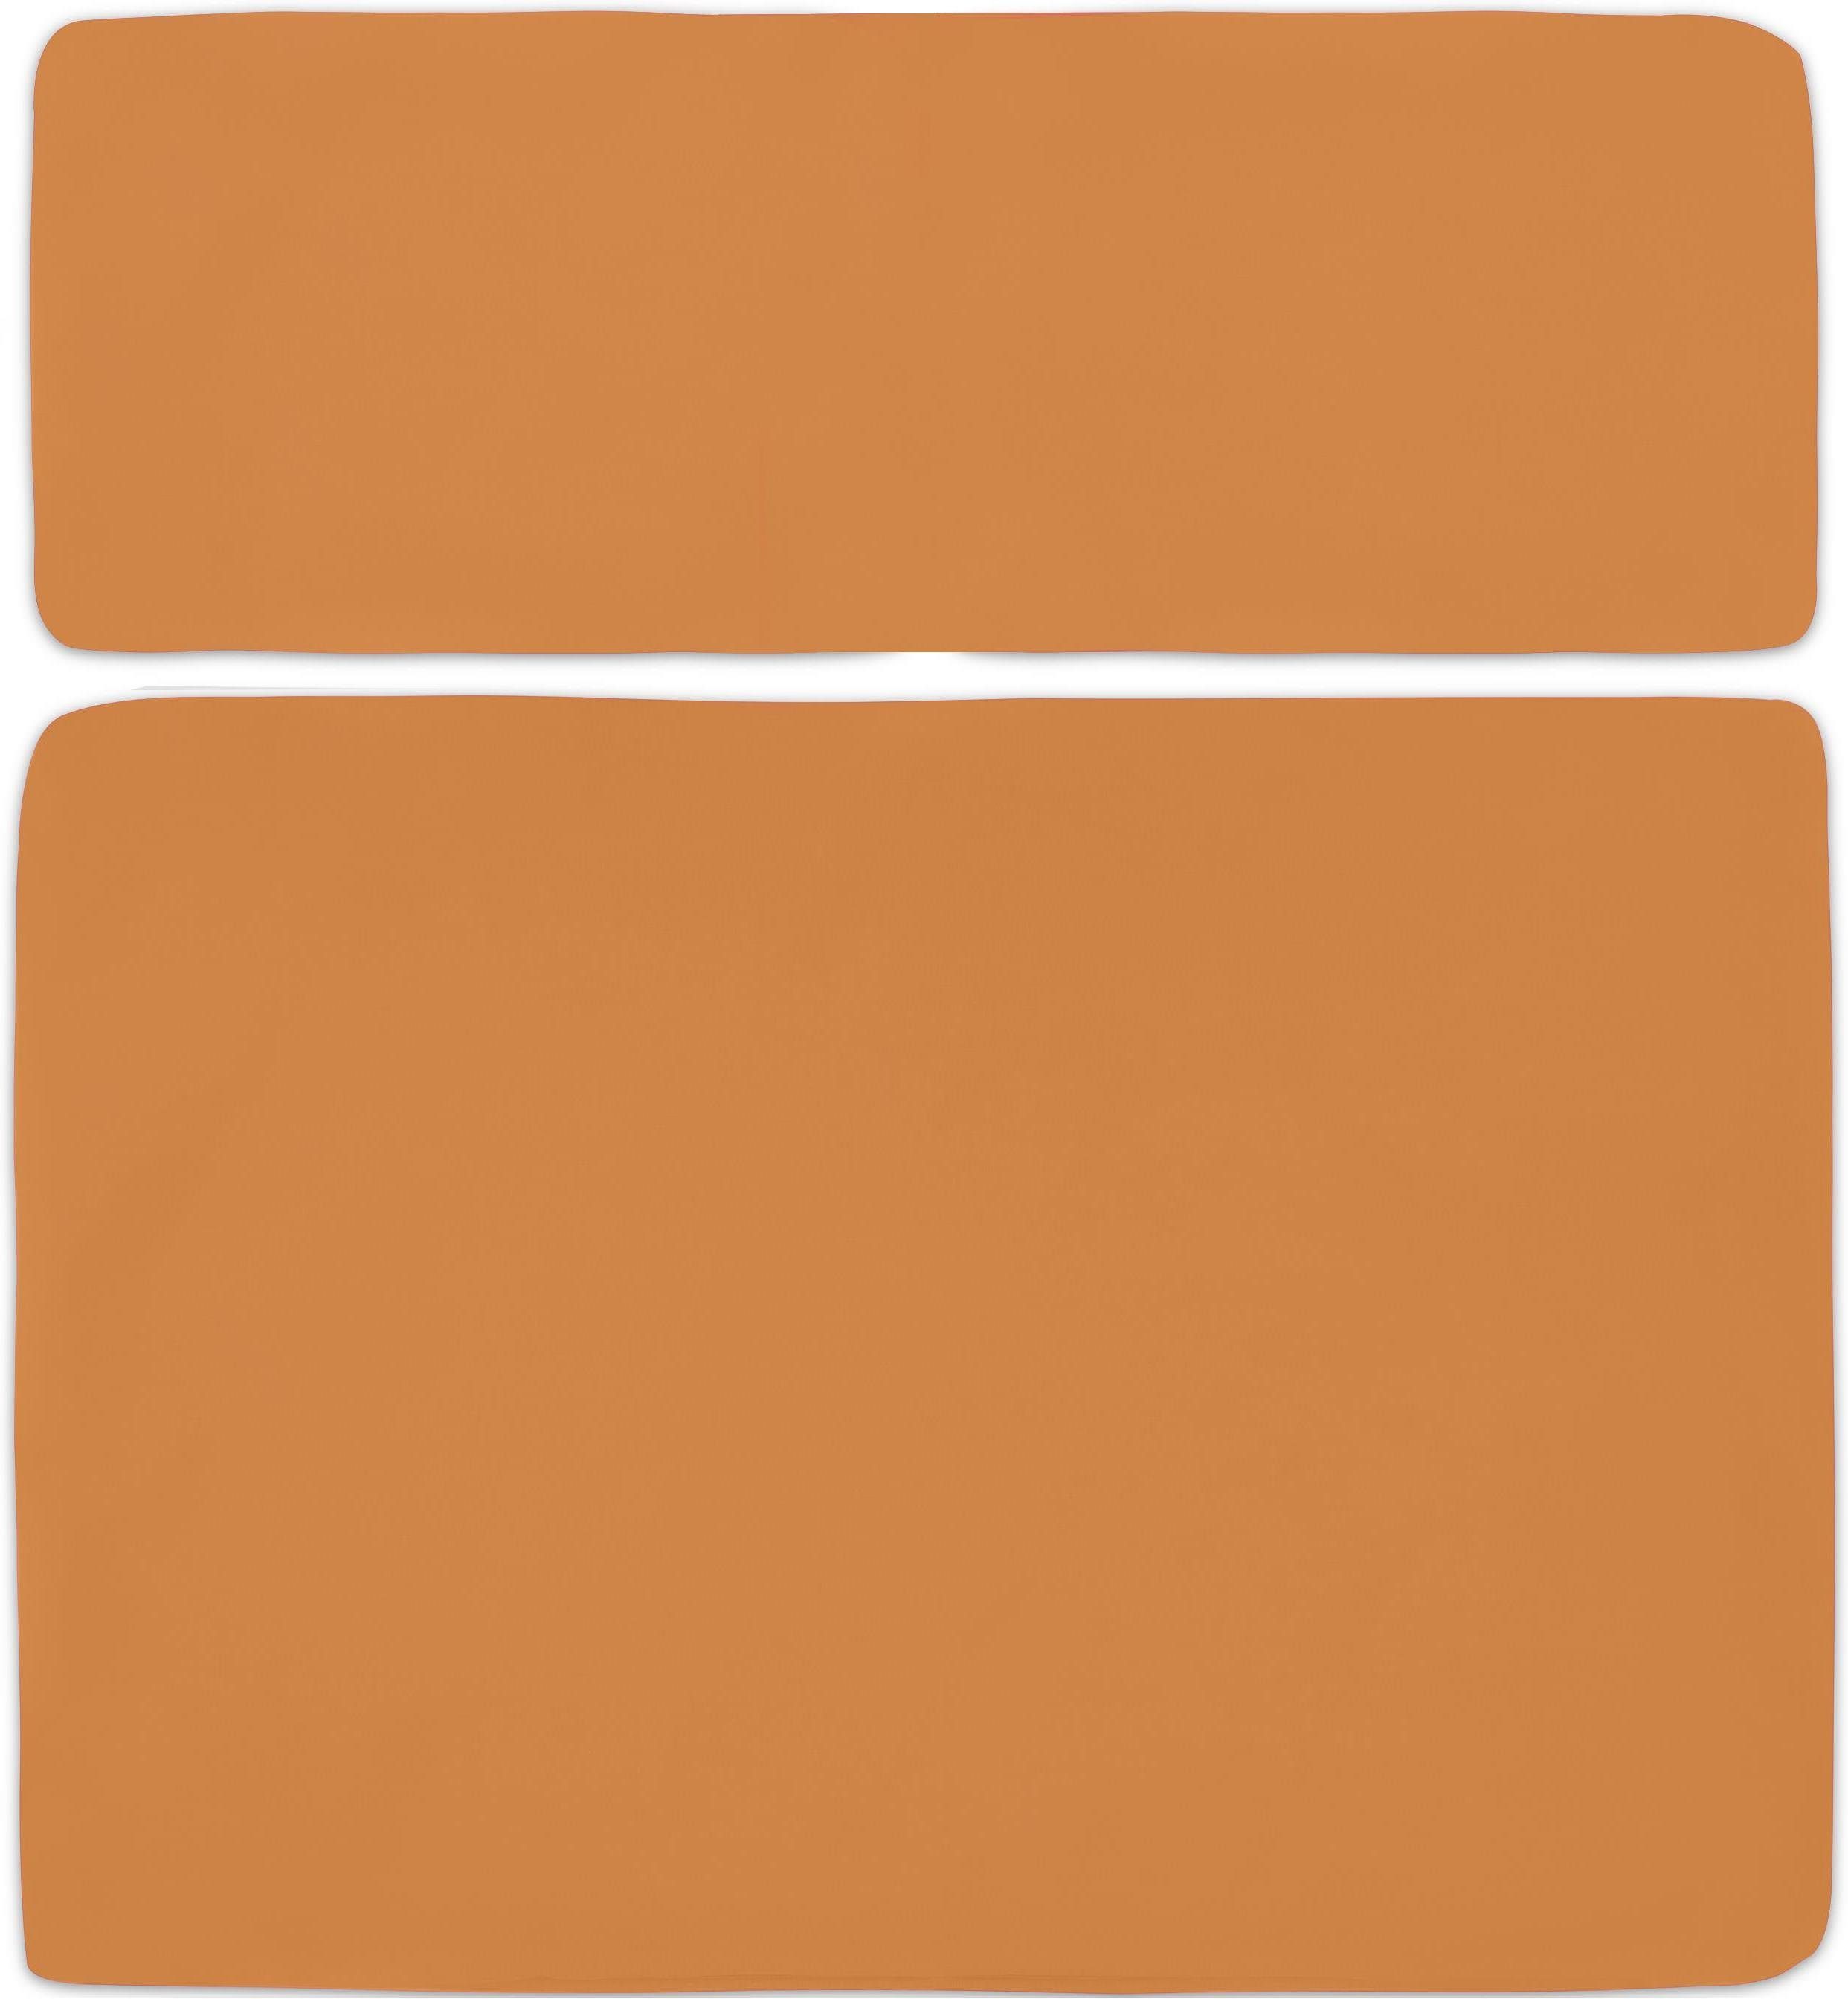 Kissenbezug 2-teilig Palettenkissen Orange für Marsala, Aspero, Bezüge 2-teilige Wasserdichte Palettenkissenbezüge